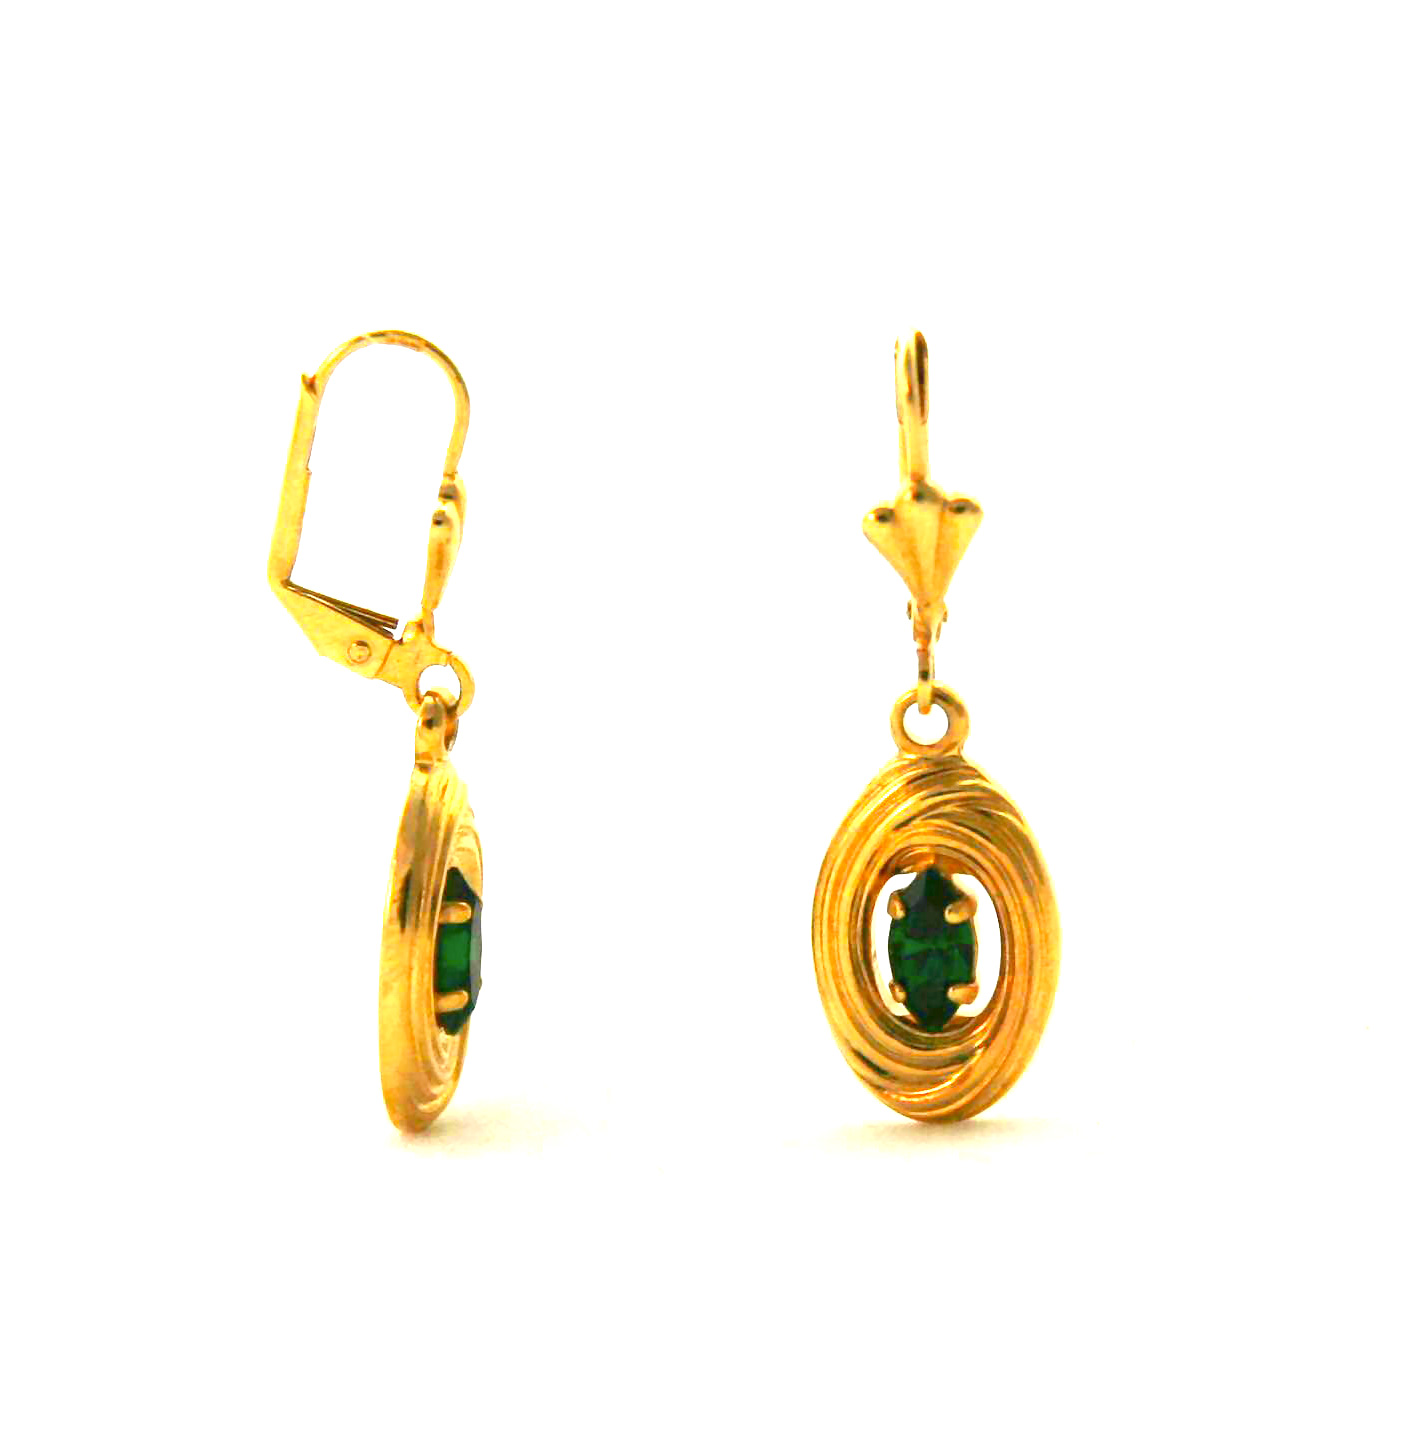 Boucles d’oreilles pendantes au coeur vert en plaqué or